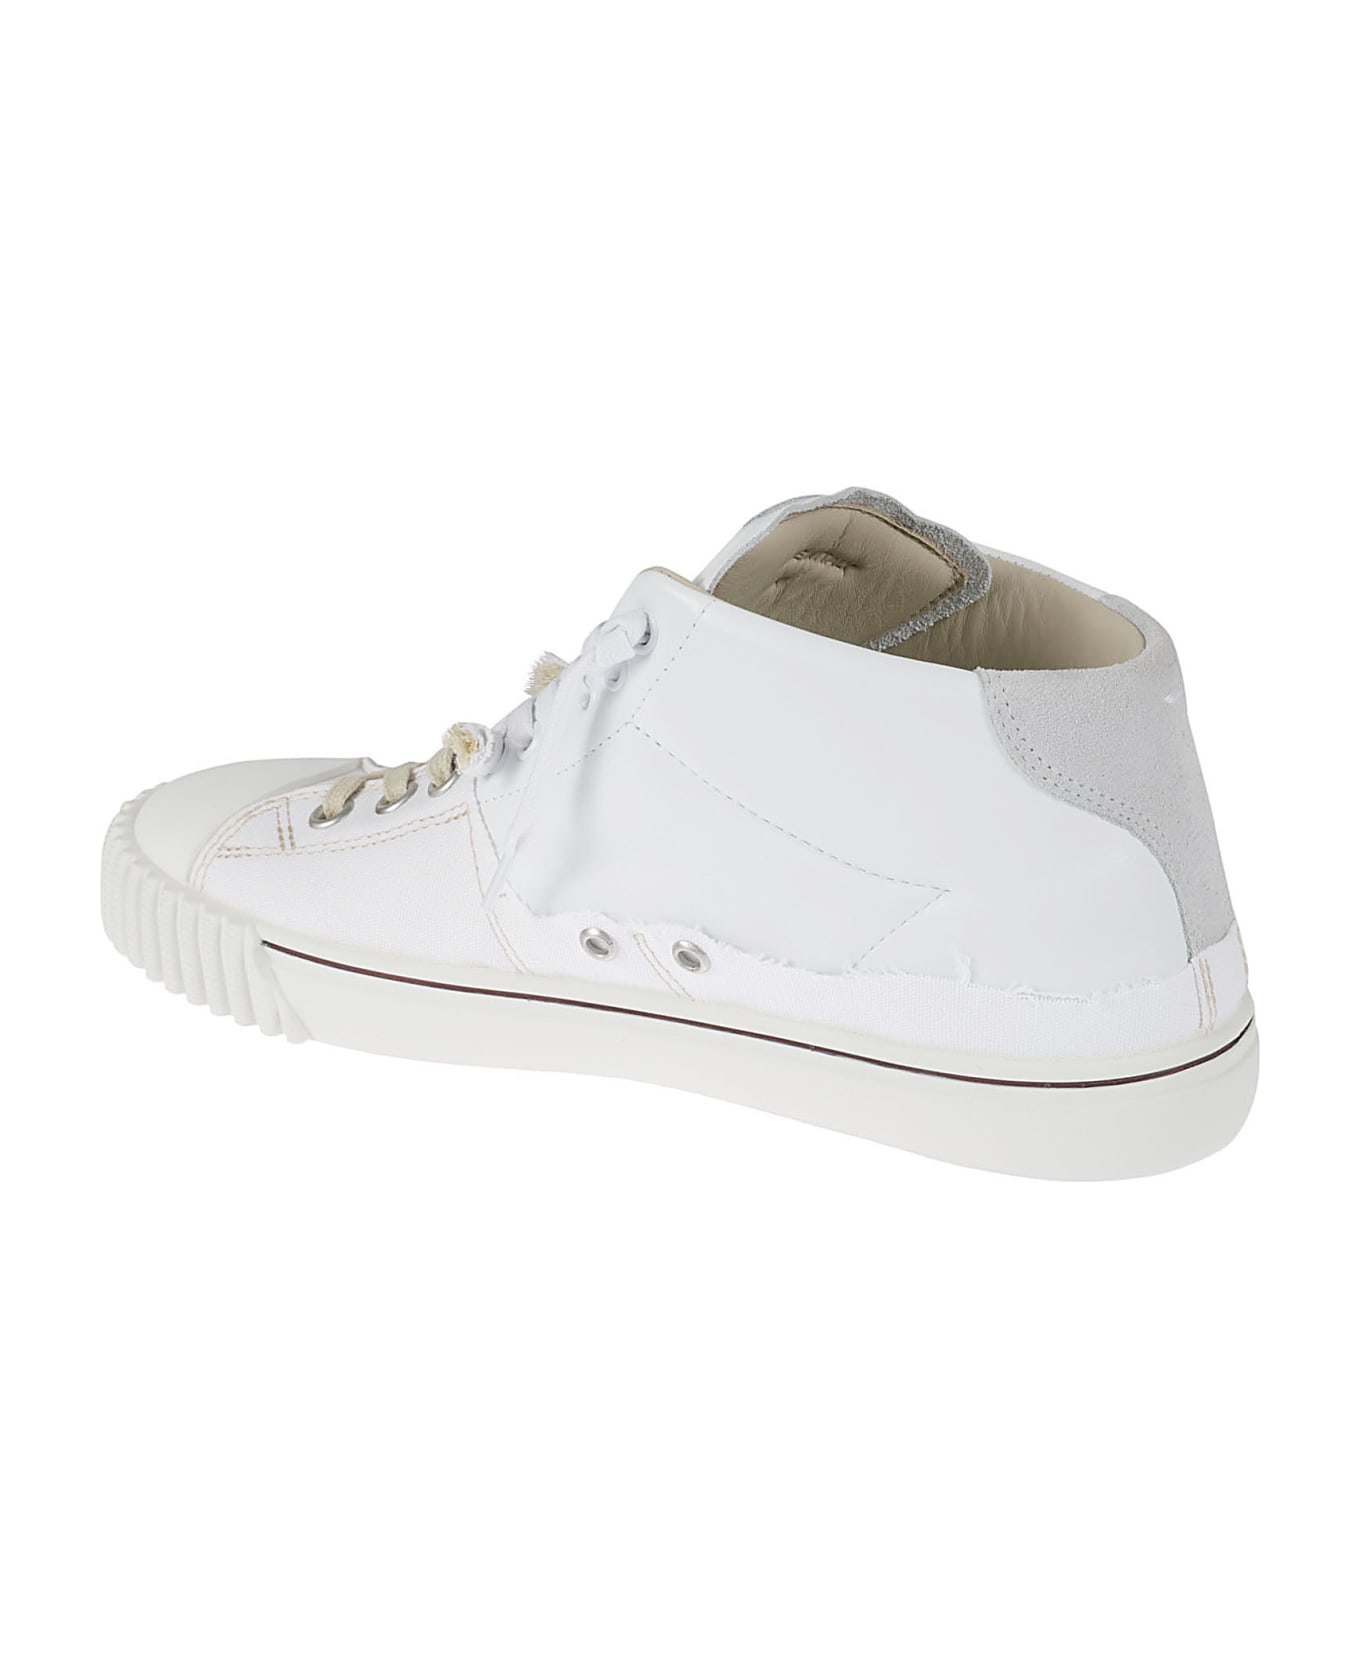 Maison Margiela Evolution Mid Sneakers - White Off White スニーカー